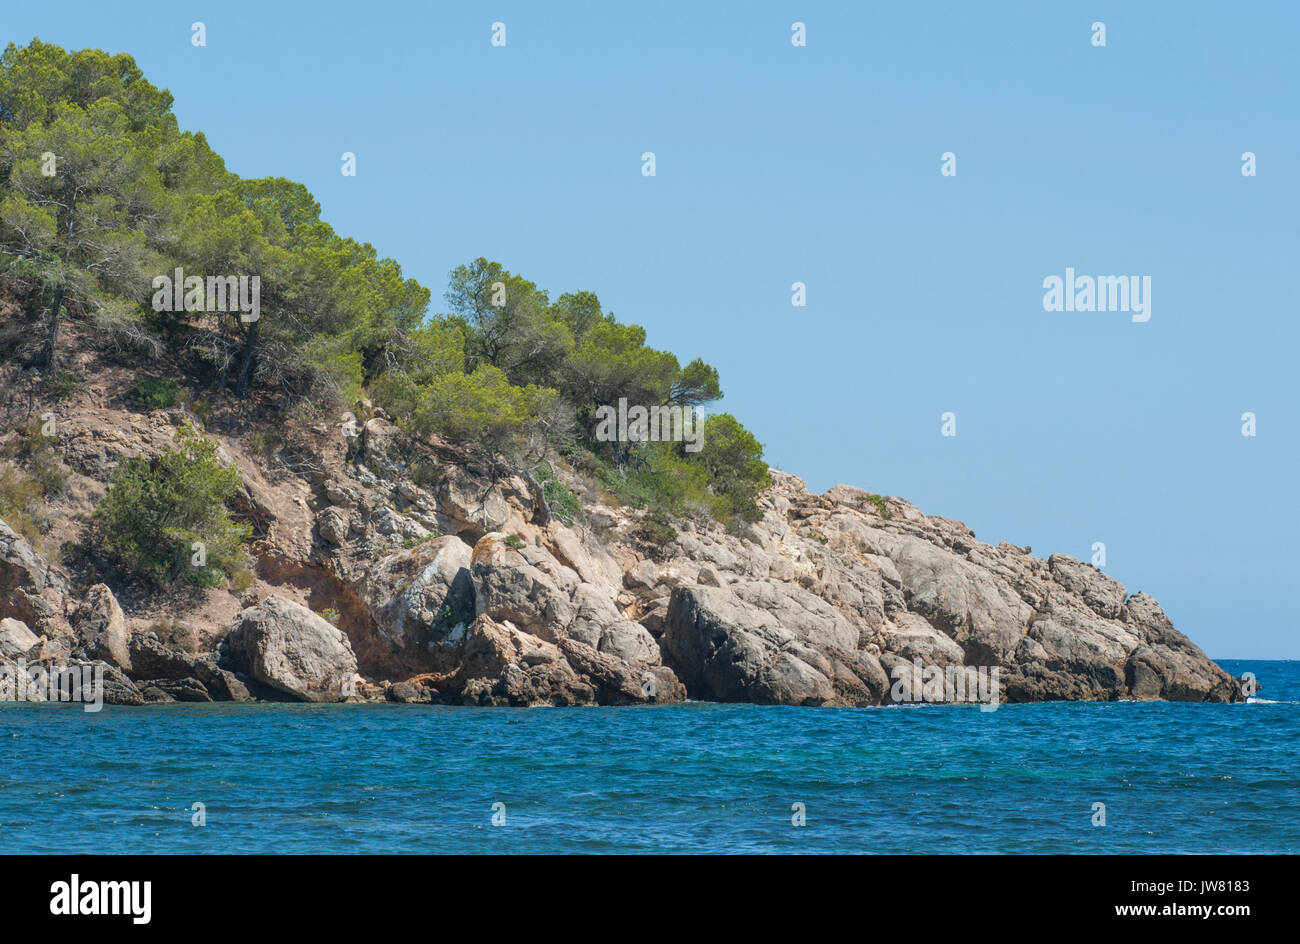 Ibiza, Baleraric Islands, Mediterranean Sea, Europe Stock Photo